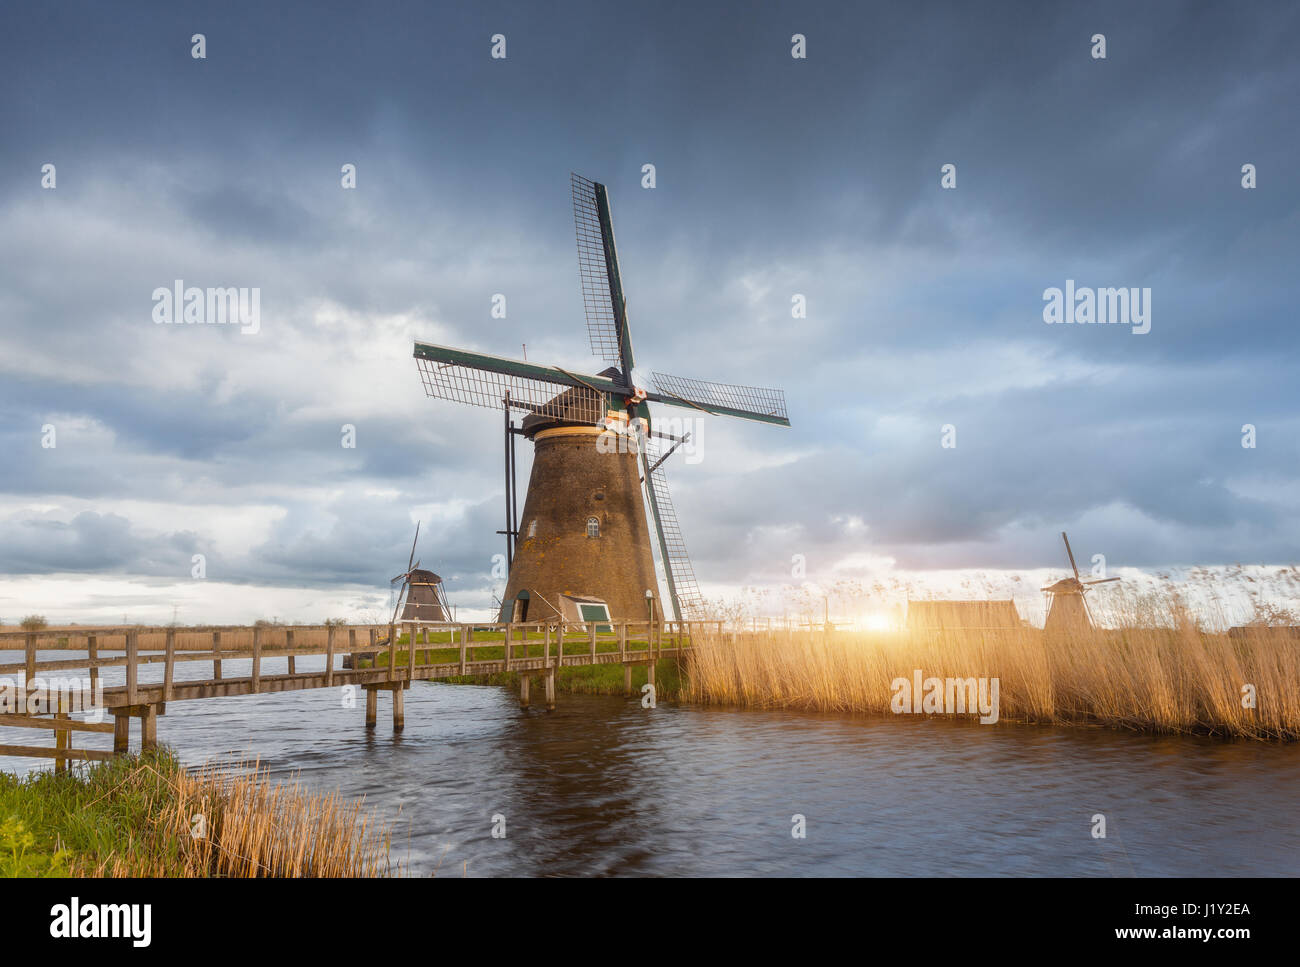 Moulins à vent incroyable au coucher du soleil. Paysage rustique avec moulins à vent hollandais traditionnel, près du pont de canaux d'eau et bleu ciel nuageux. Soir couvert Banque D'Images